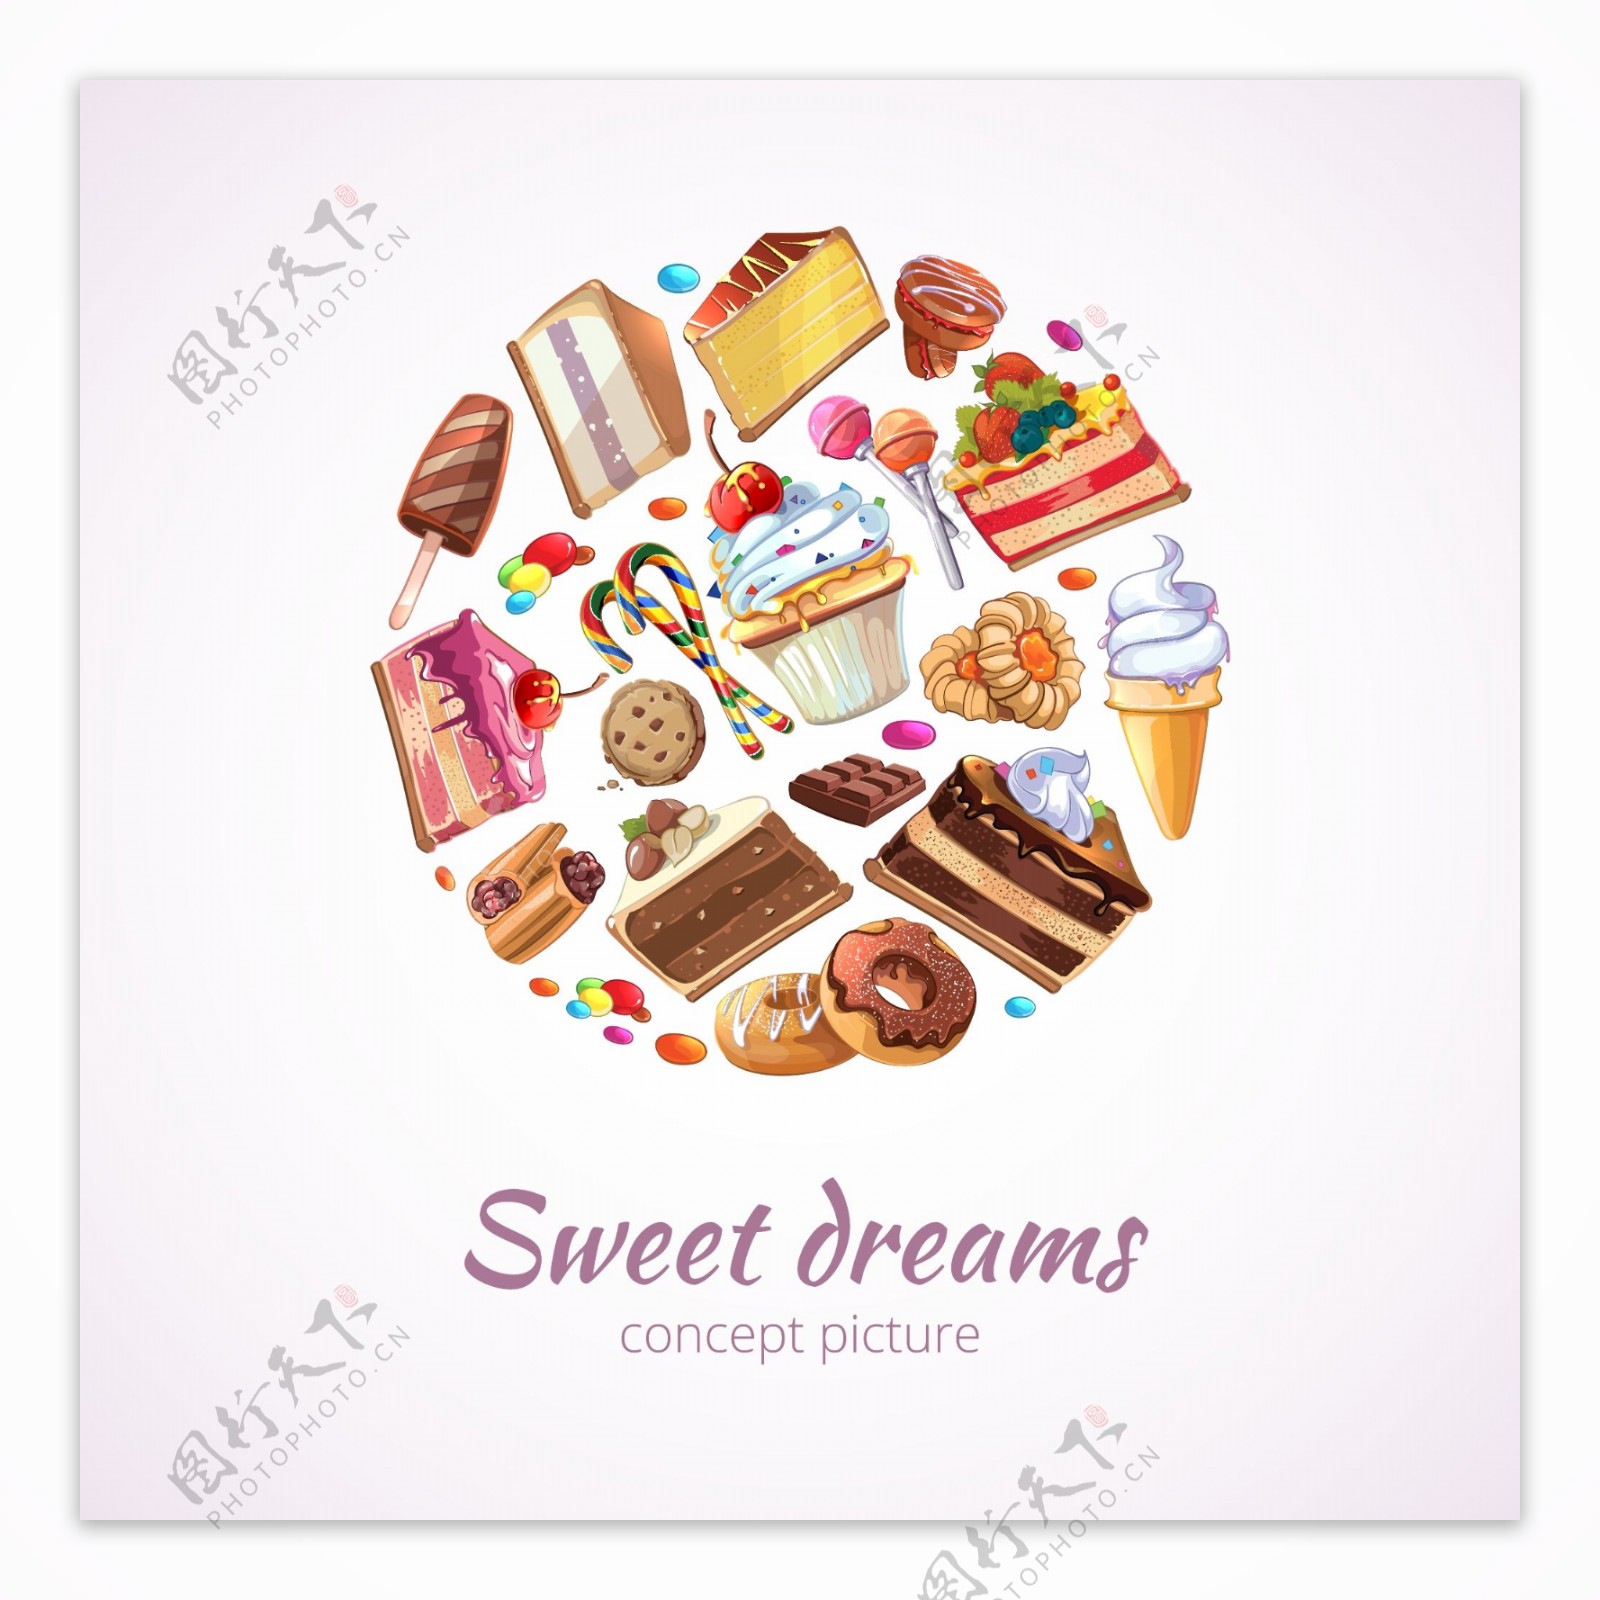 美食食物甜品冰淇淋卡通背景矢量装饰素材